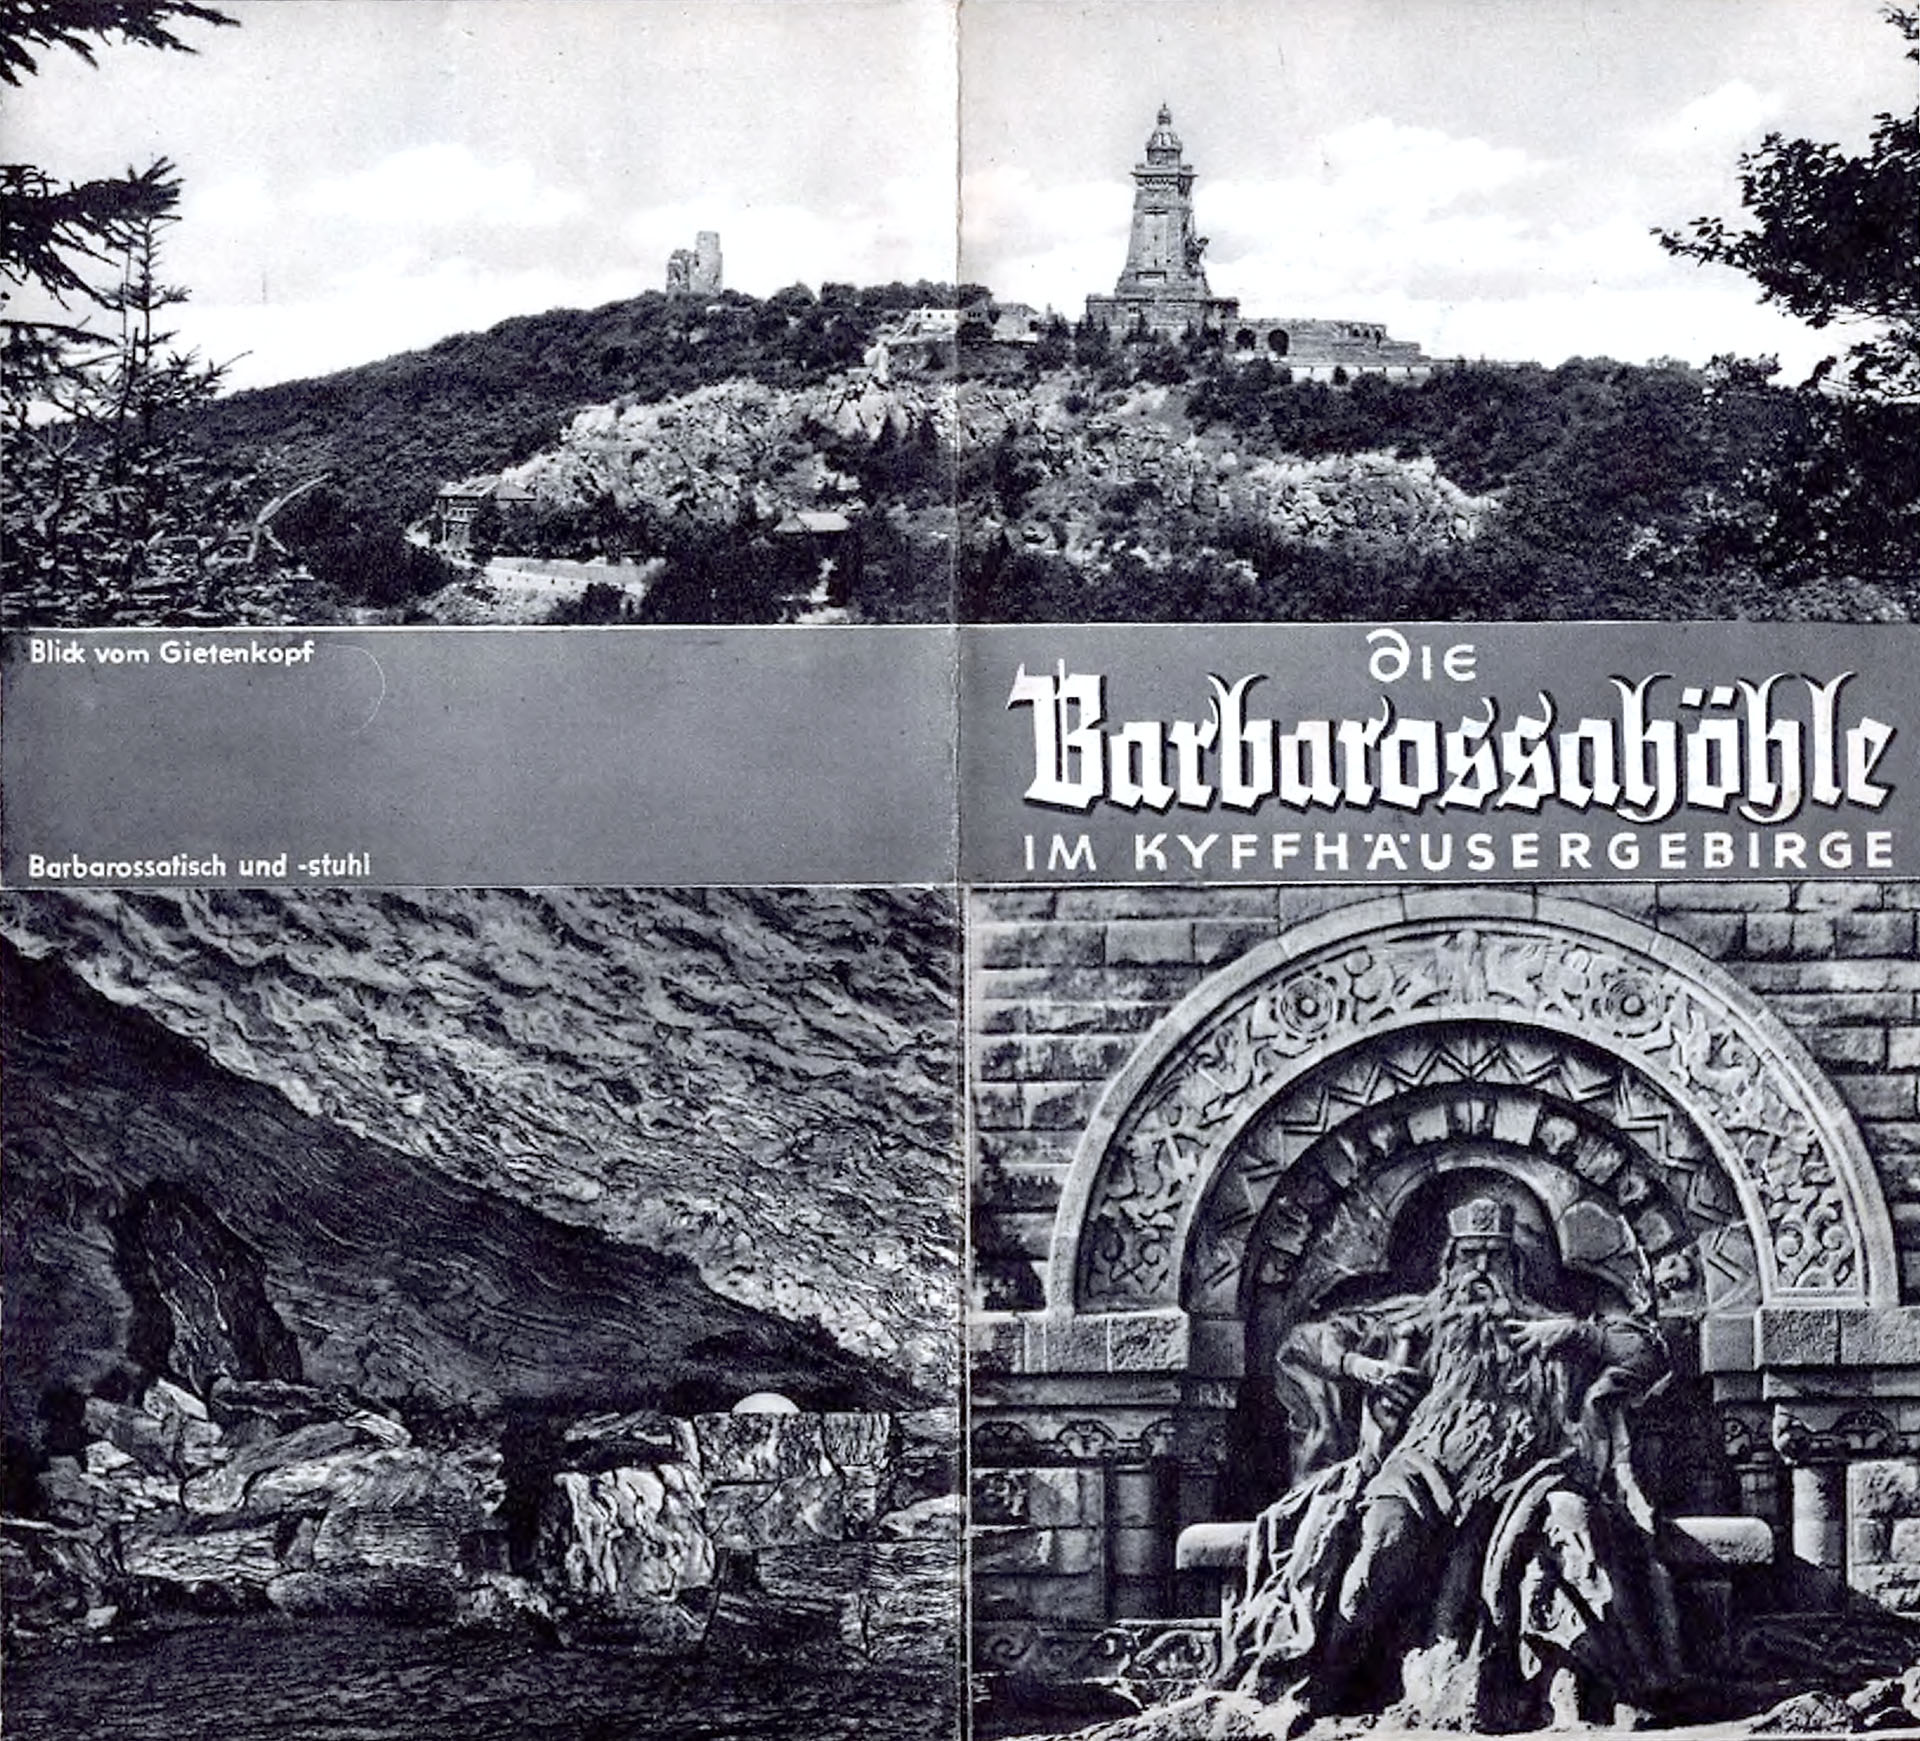 Die Barbarossahöhle im Kyffhäusergebirge - Verwaltung der Barbarossahöhle - Rat der Gemeinde Rottleben / Kyffhäuser